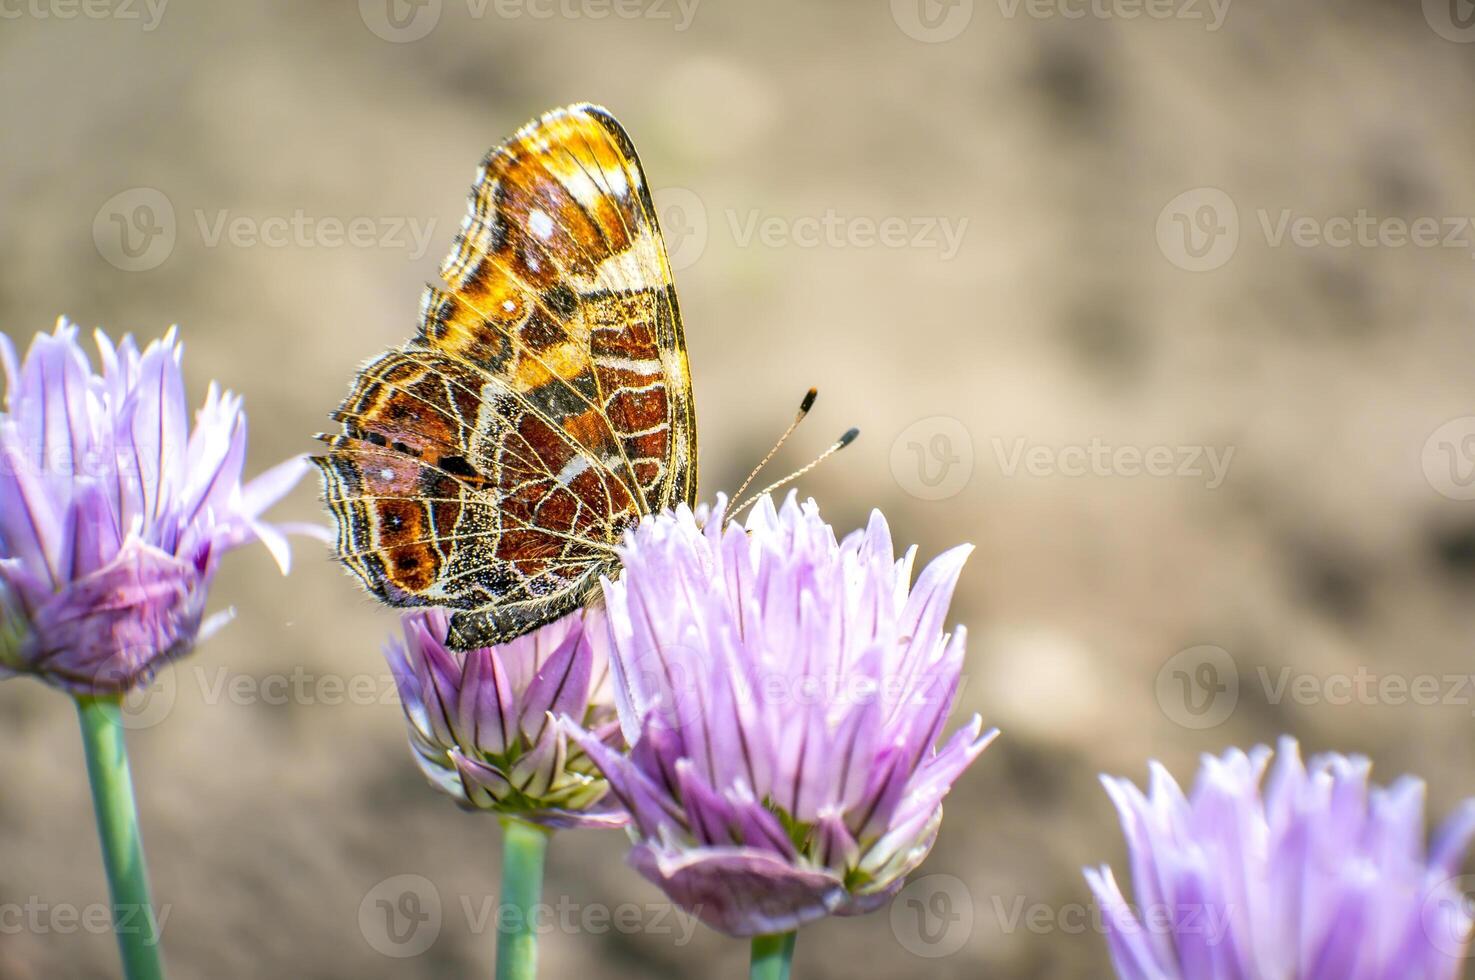 bonito de colores mariposa es Relajado en mi temporada jardín foto